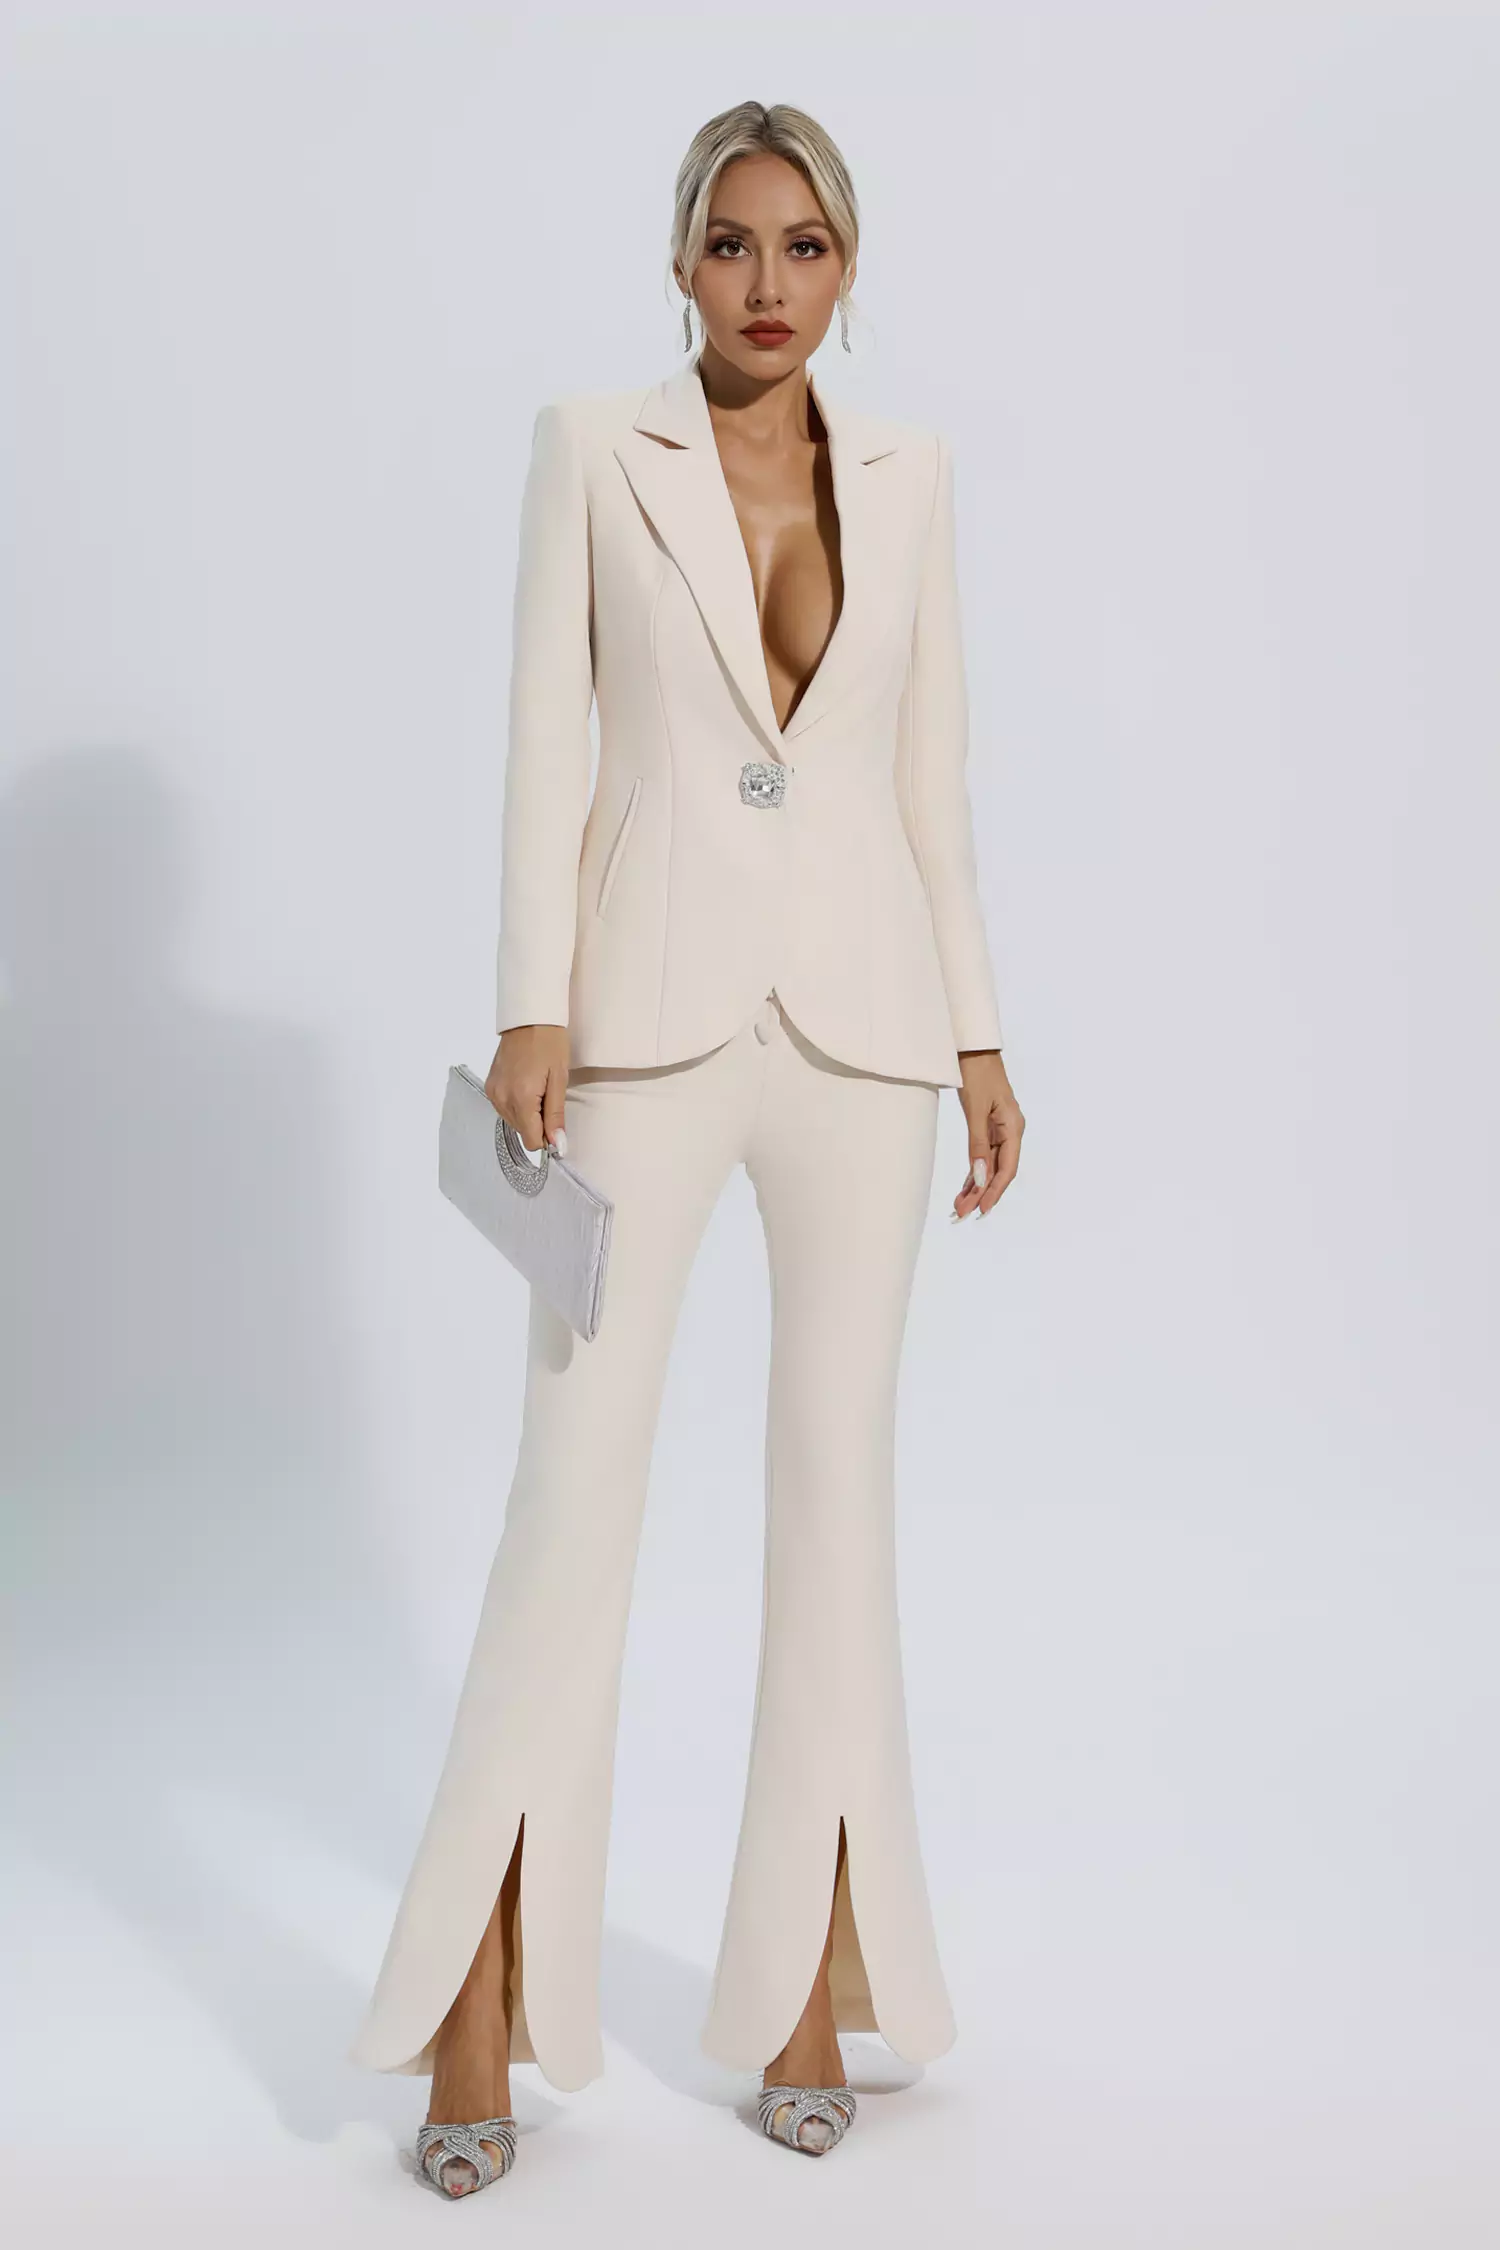 Mallory Ivory White Long Sleeve Blazer Set